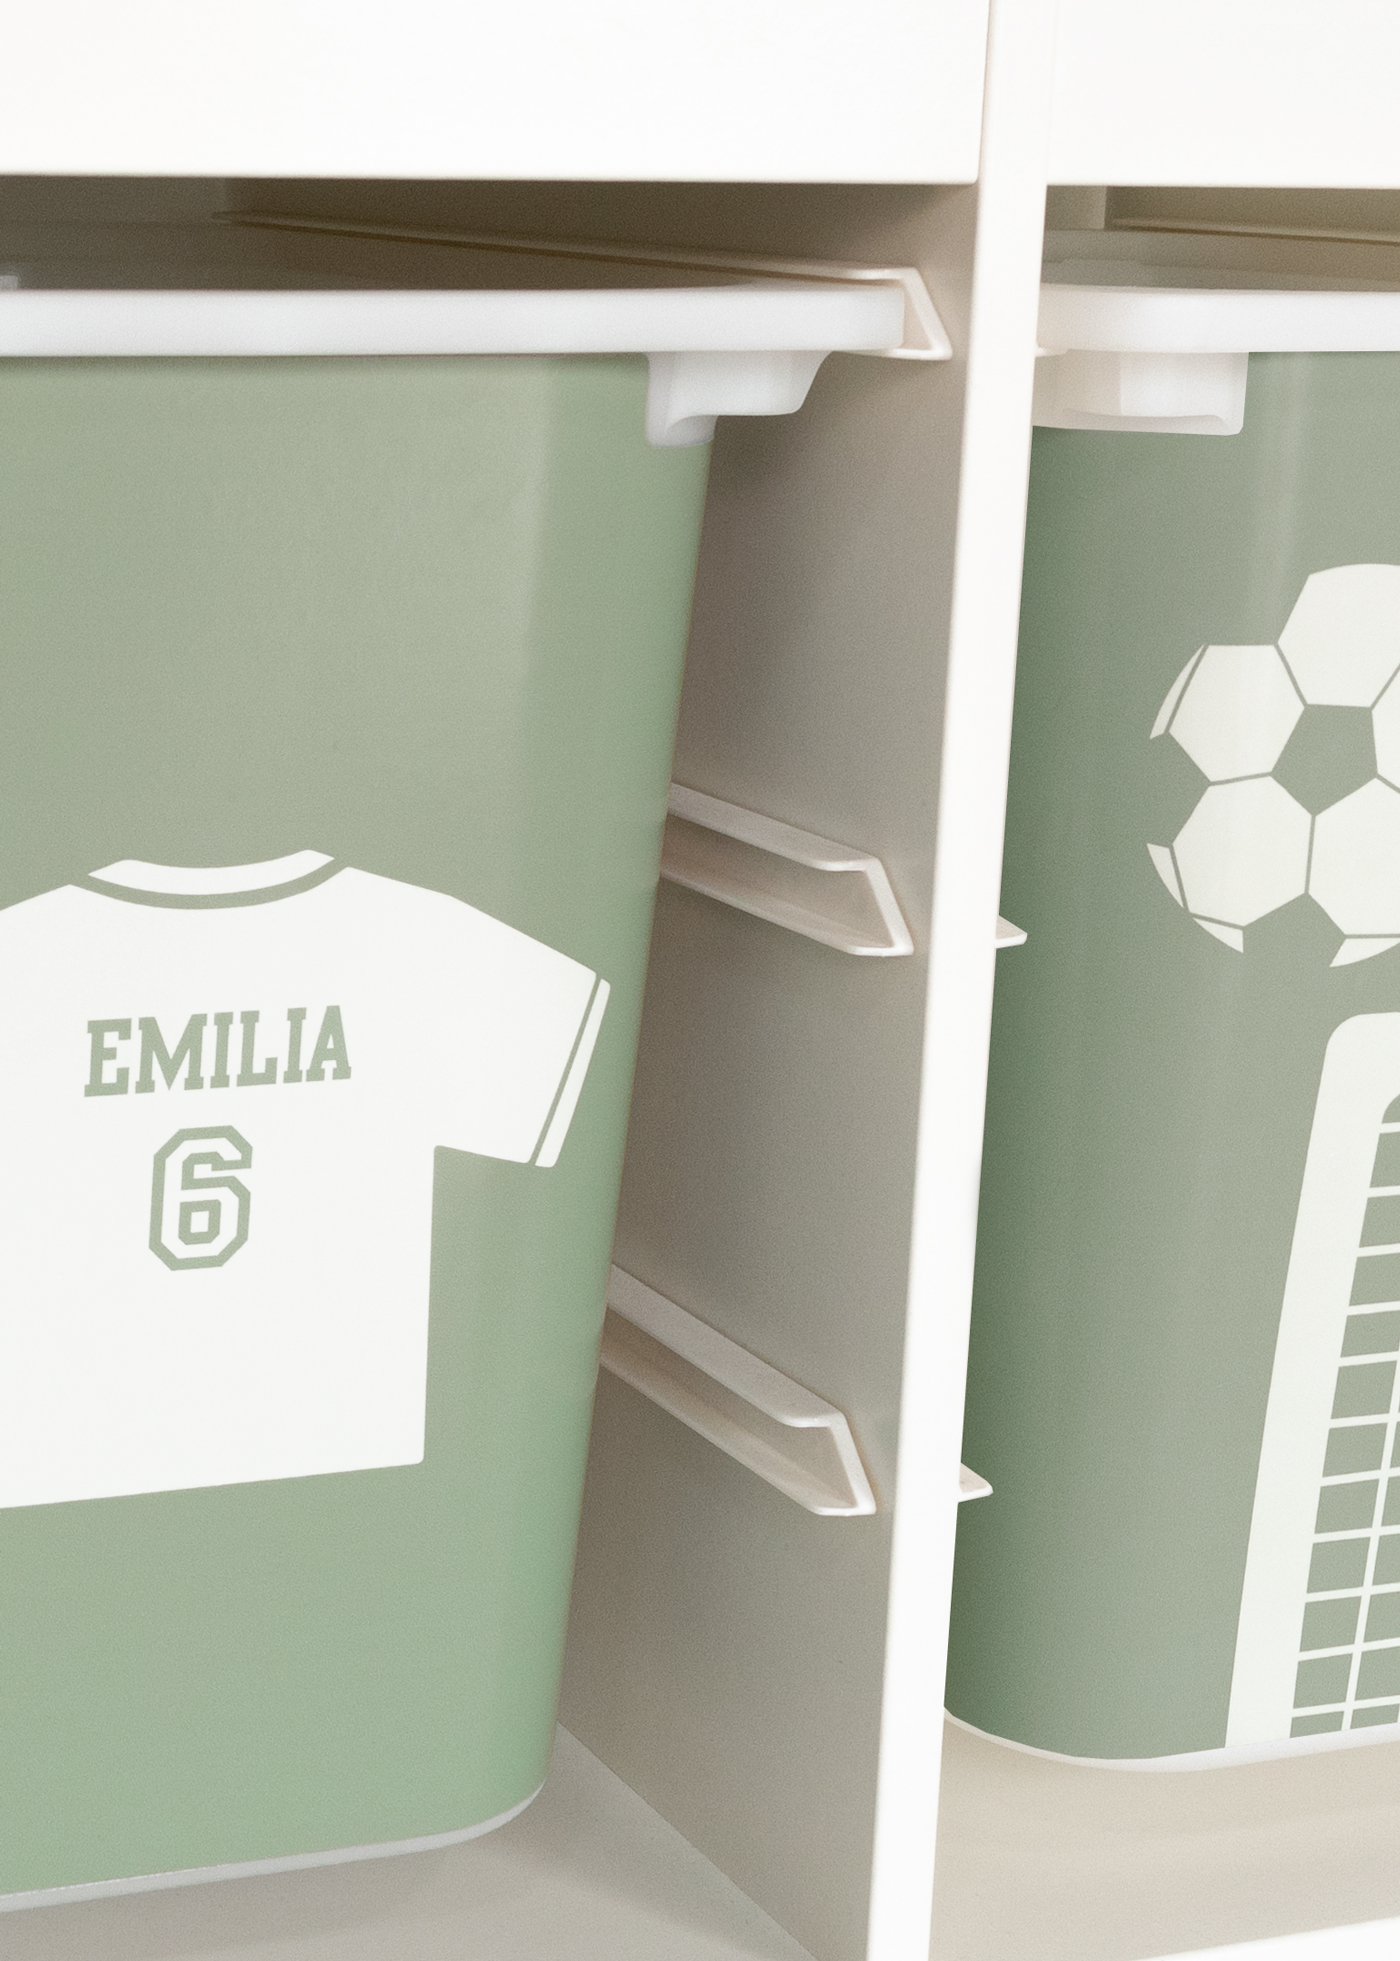 Fußball Deko für dein Fußball Kinderzimmer als Fußballzimmer Deko mit Fußballmotiven passend für die Fußball EM